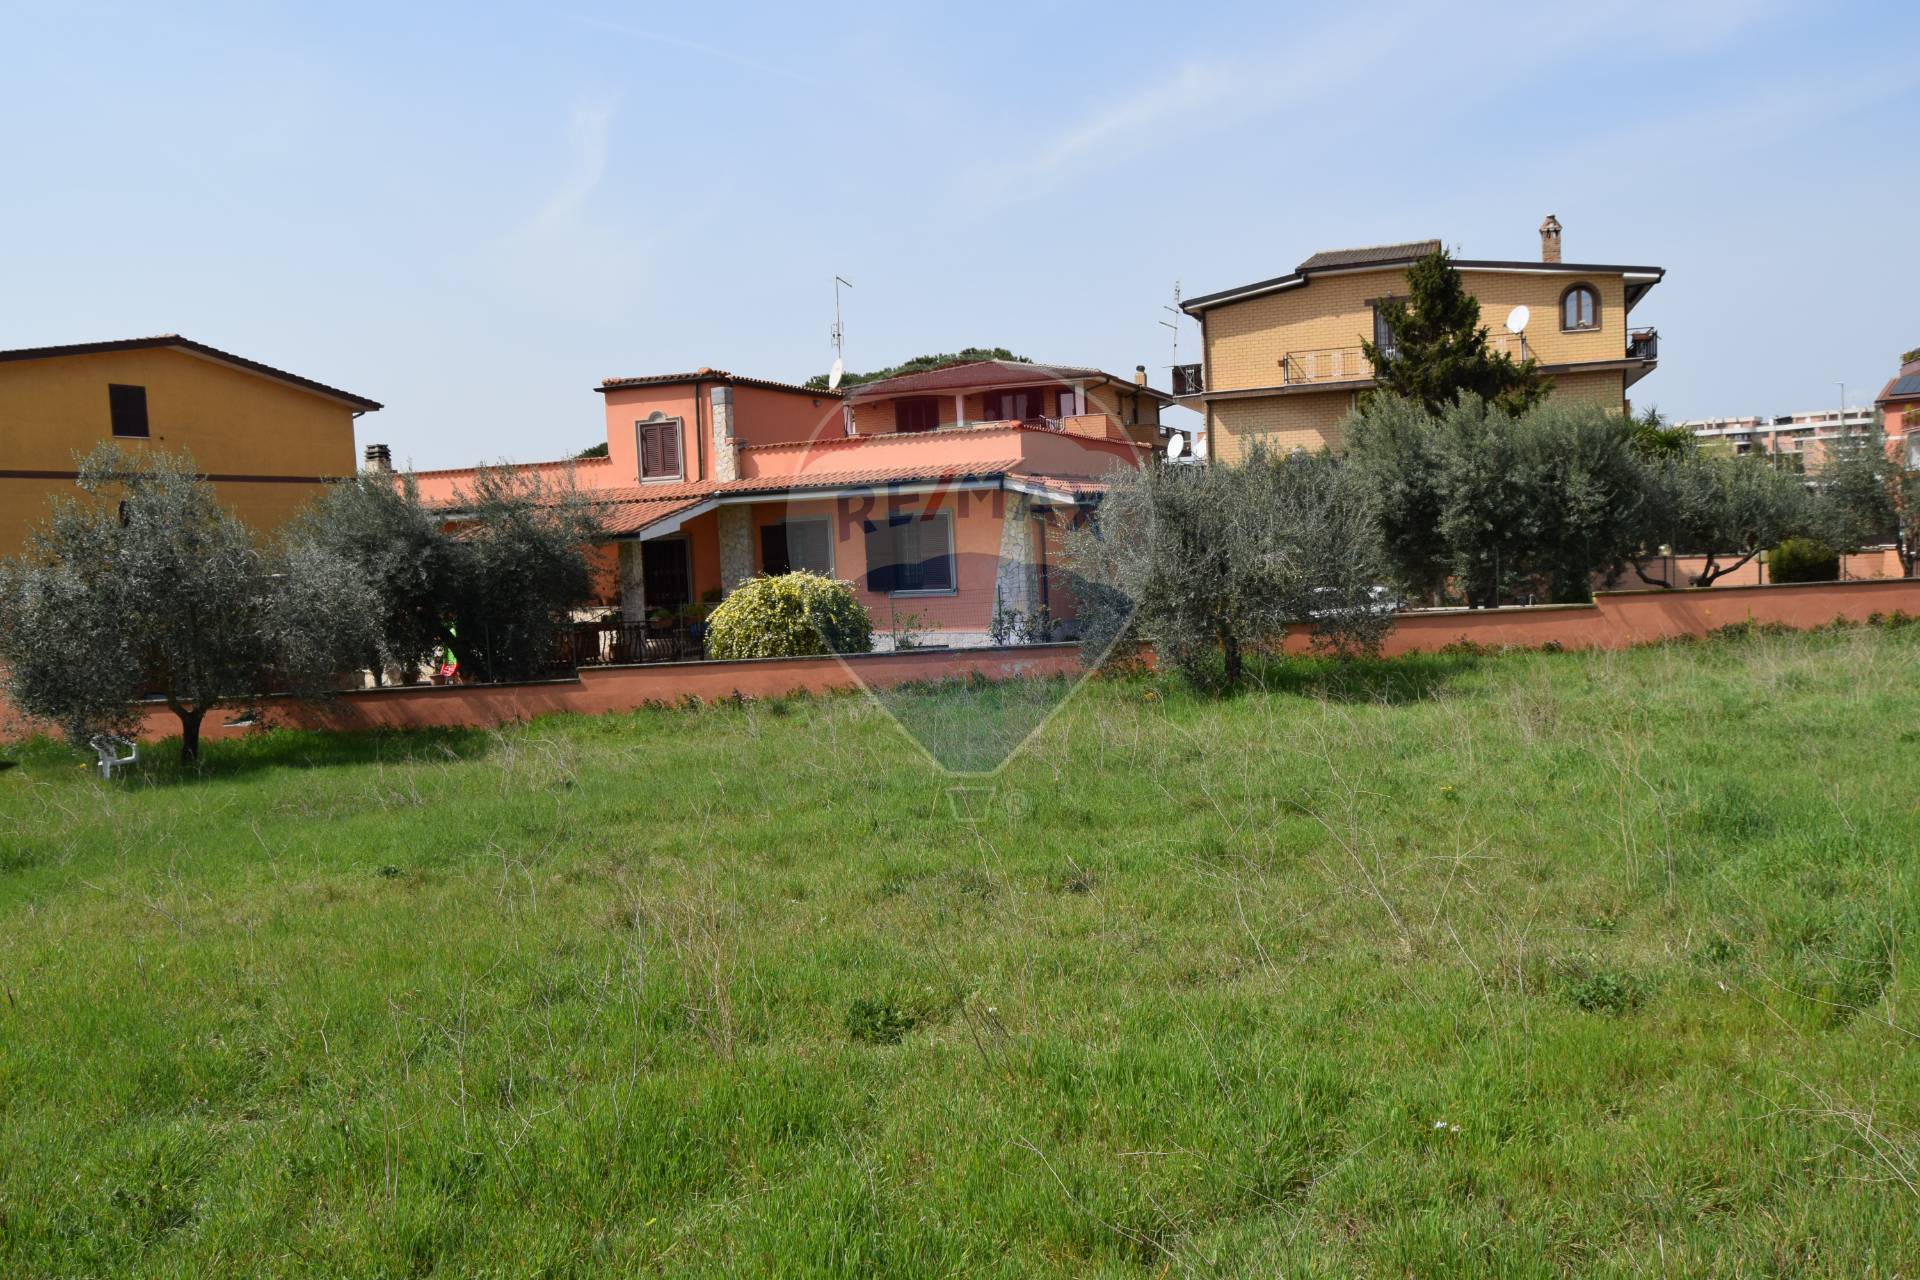 Terreno Edificabile Residenziale in vendita a Roma, 9999 locali, zona Località: CaseRosse, prezzo € 150.000 | CambioCasa.it